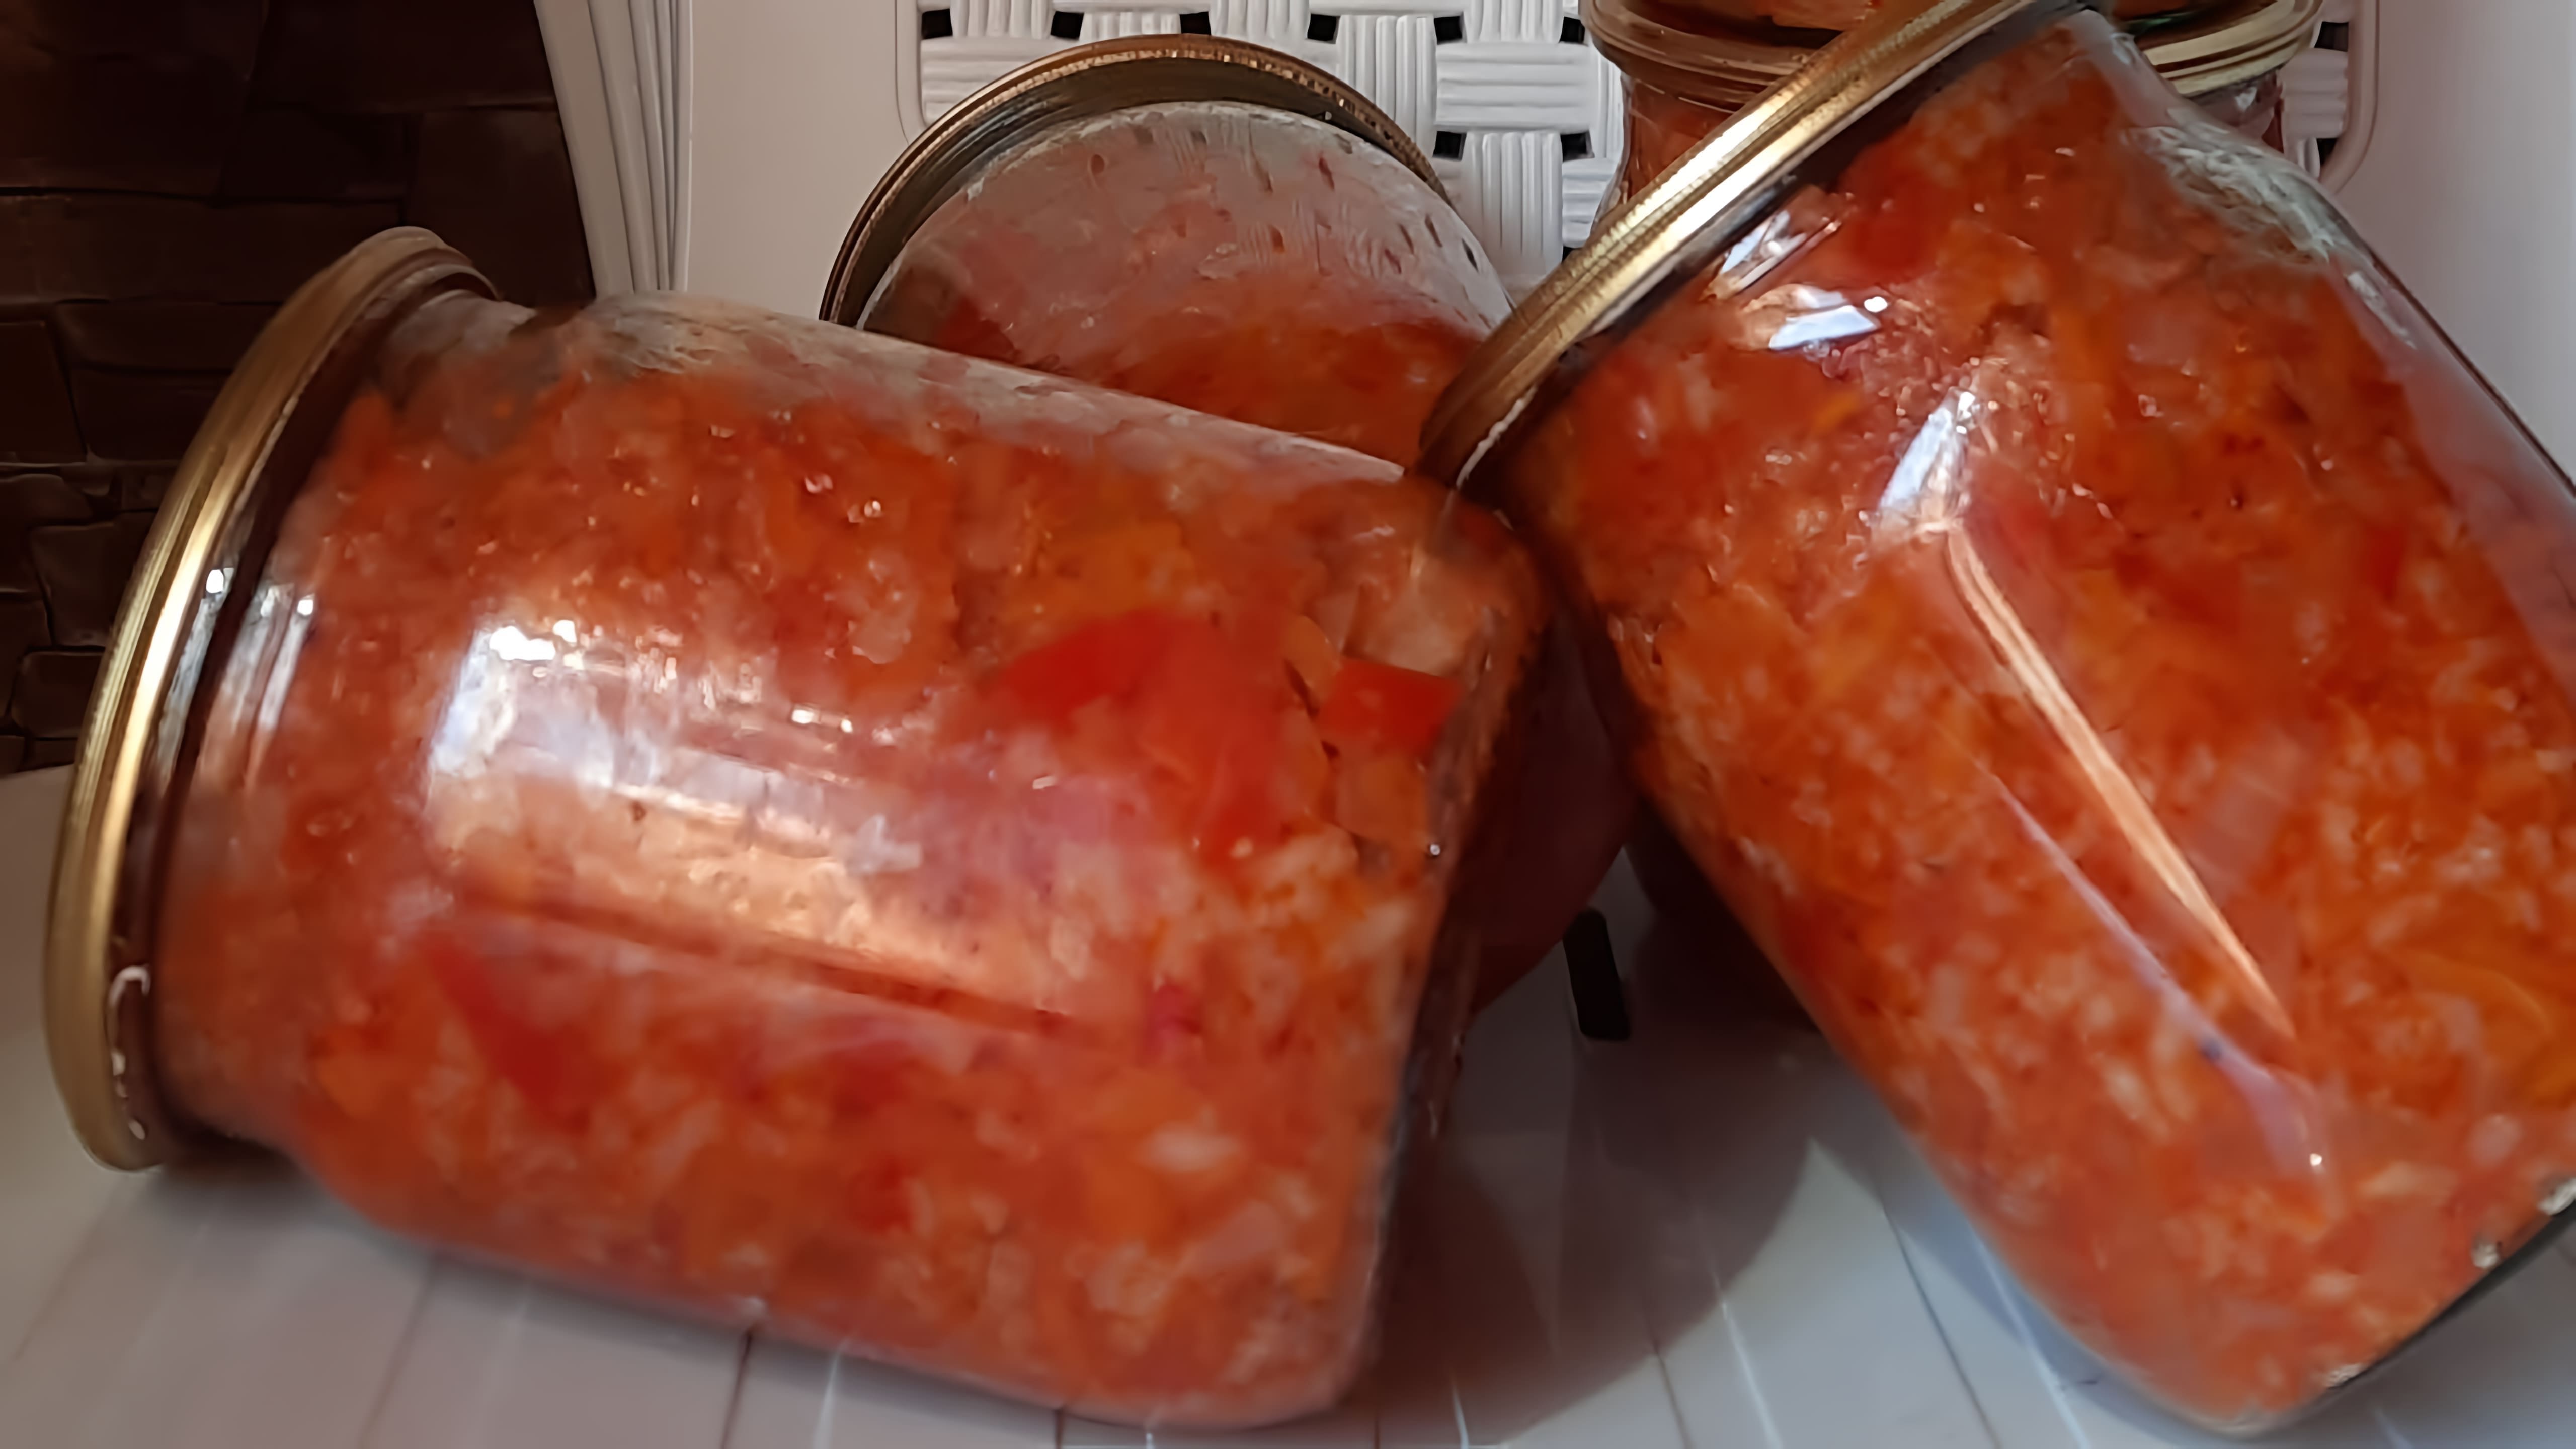 Рецепт: Лук - 1 кг. Морковь - 1 кг Сладкий Болгарский перец - 1 кг. Помидоры - 2 кг. Рис - 2 стакана. Подсолнечное масло... 